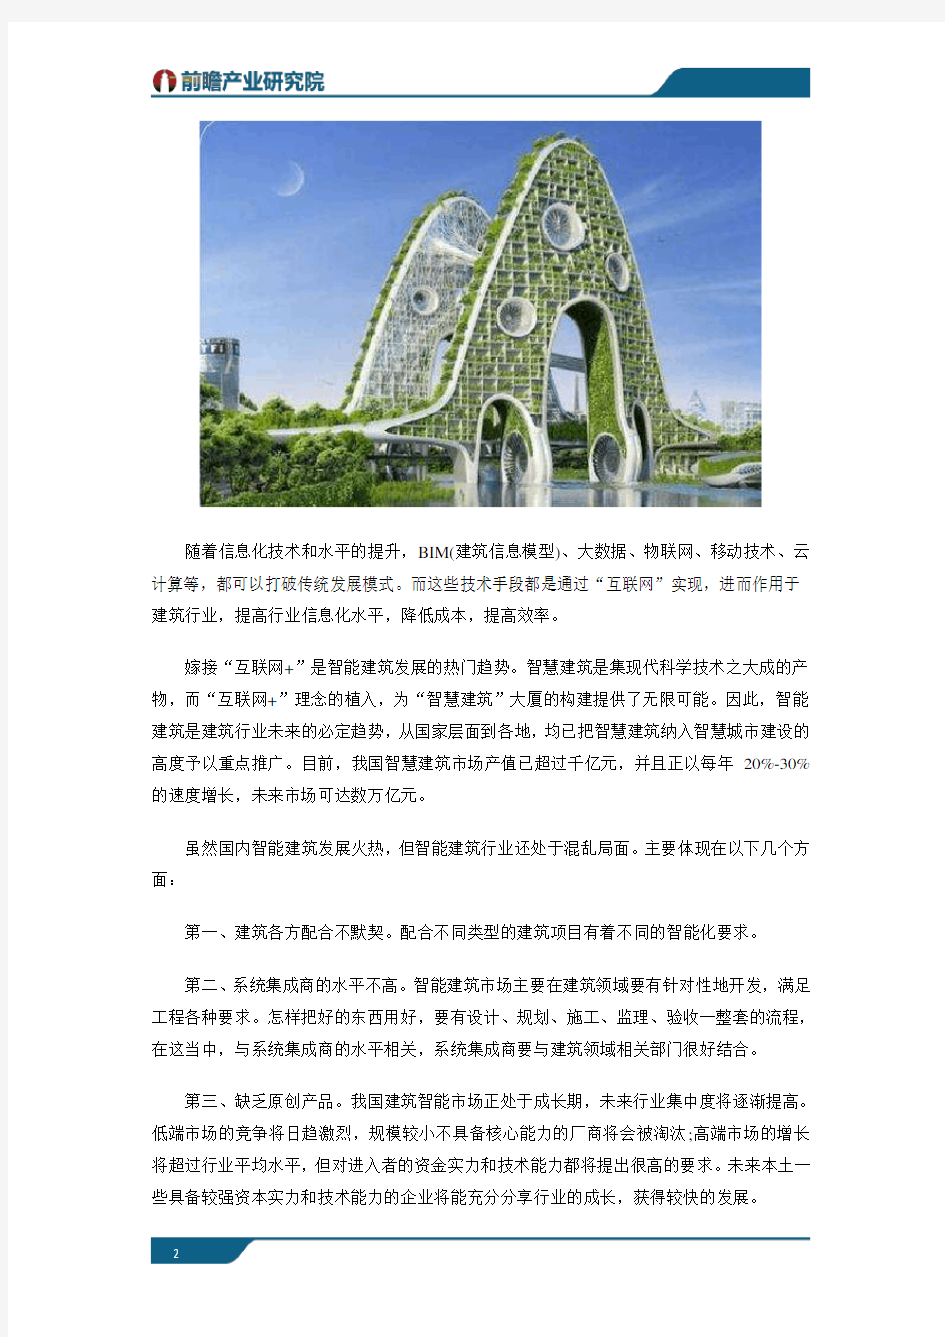 中国智能建筑行业近年发展情况及发展趋势分析